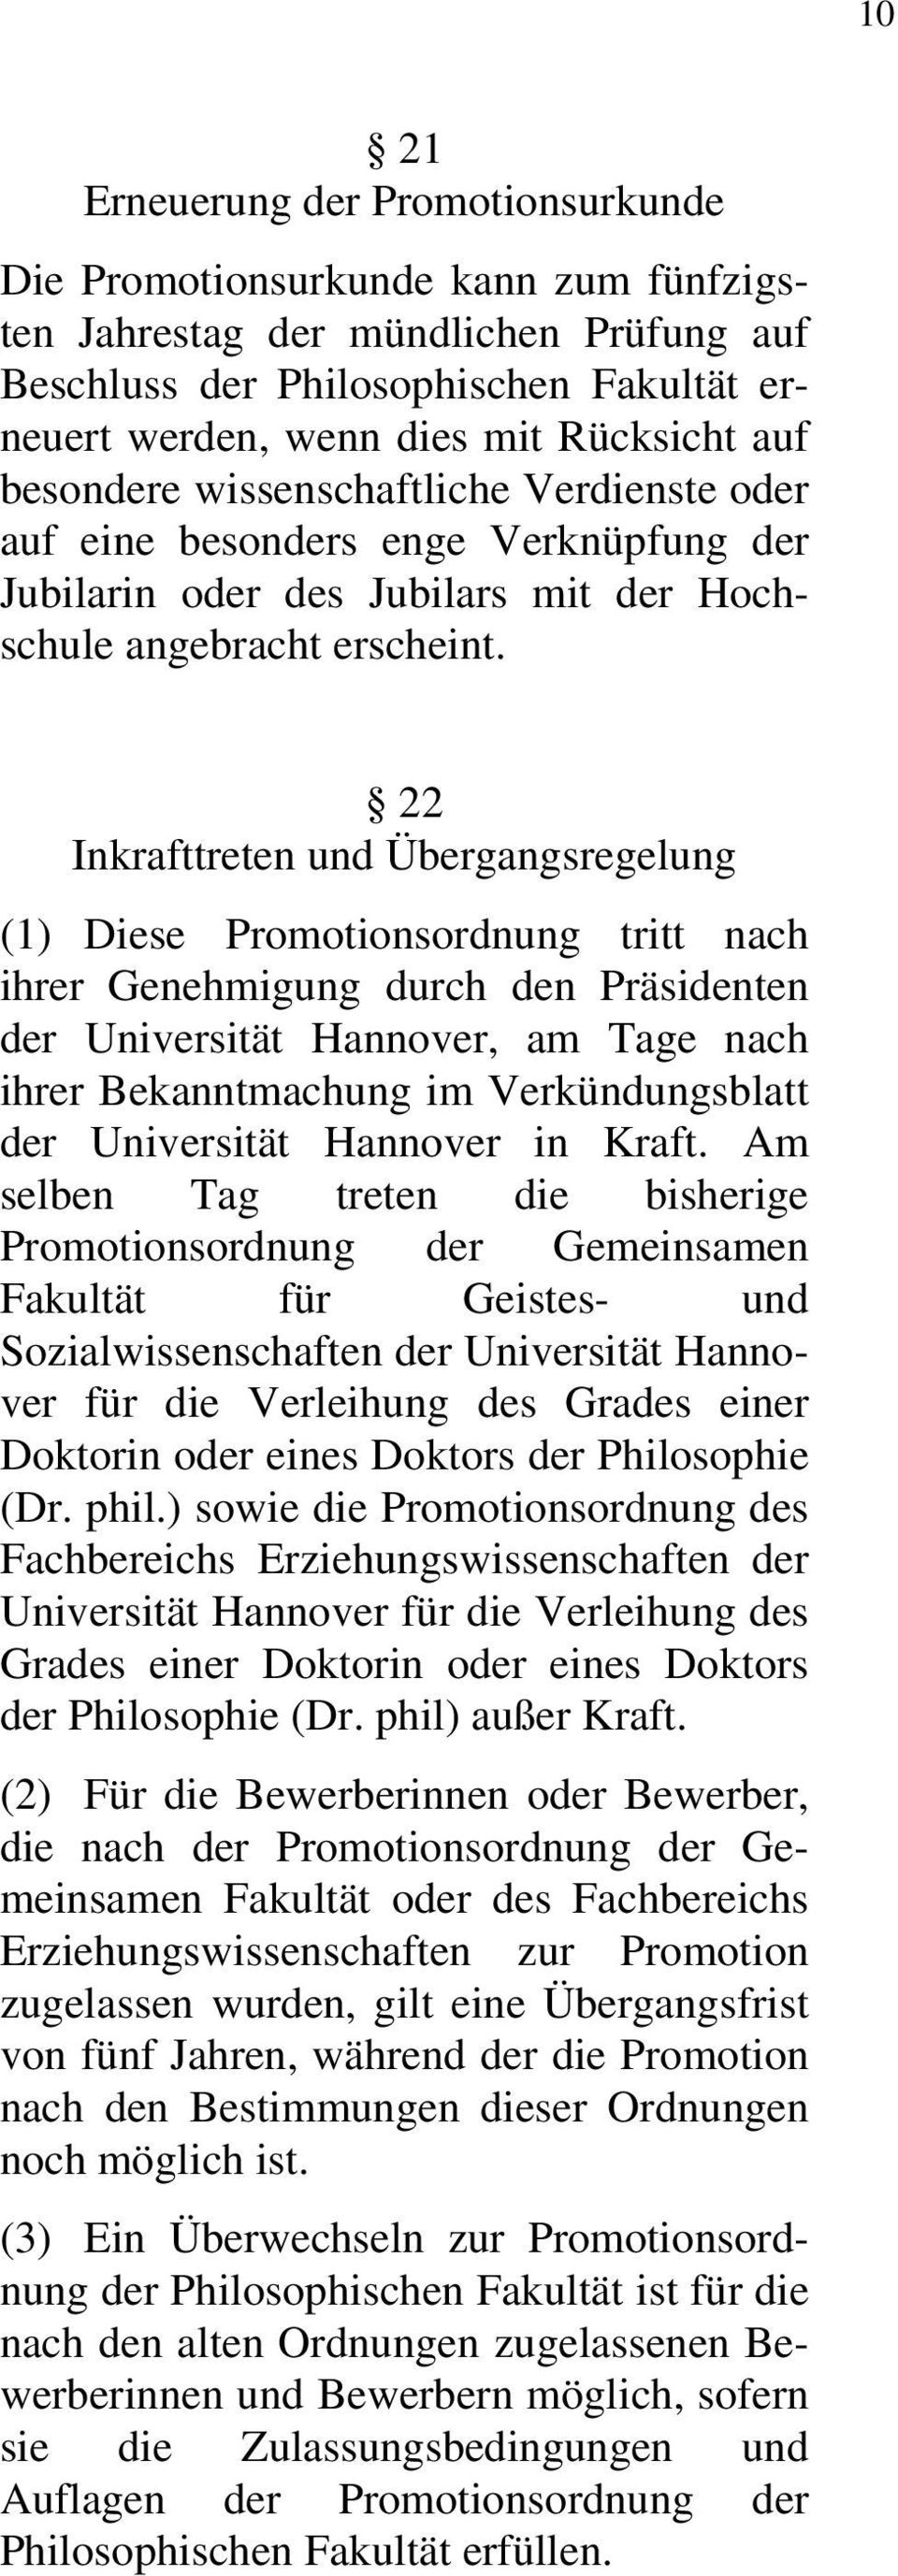 22 Inkrafttreten und Übergangsregelung (1) Diese Promotionsordnung tritt nach ihrer Genehmigung durch den Präsidenten der Universität Hannover, am Tage nach ihrer Bekanntmachung im Verkündungsblatt